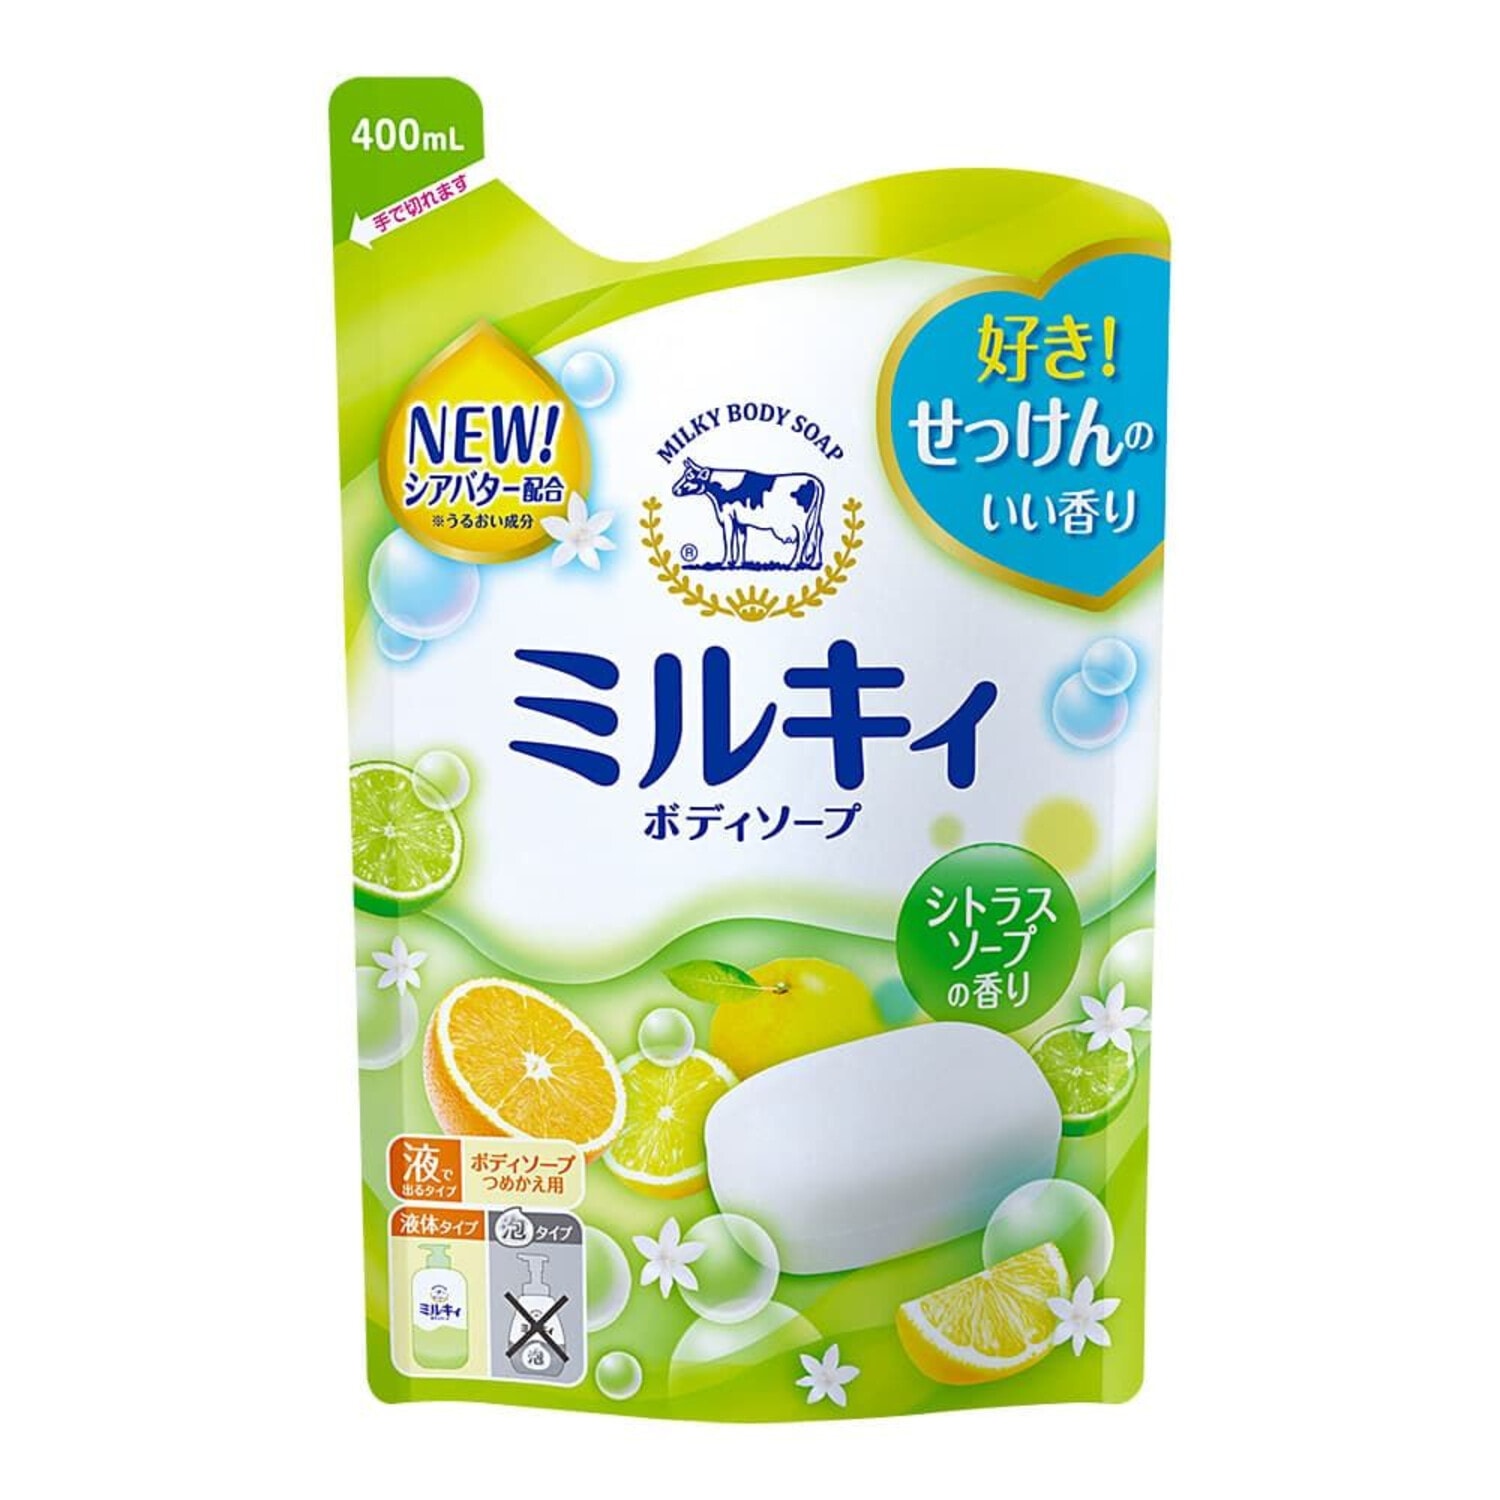 COW Milky Body Soap Citrus Молочное жидкое мыло с цитрусовым ароматом, 400мл. / 006347